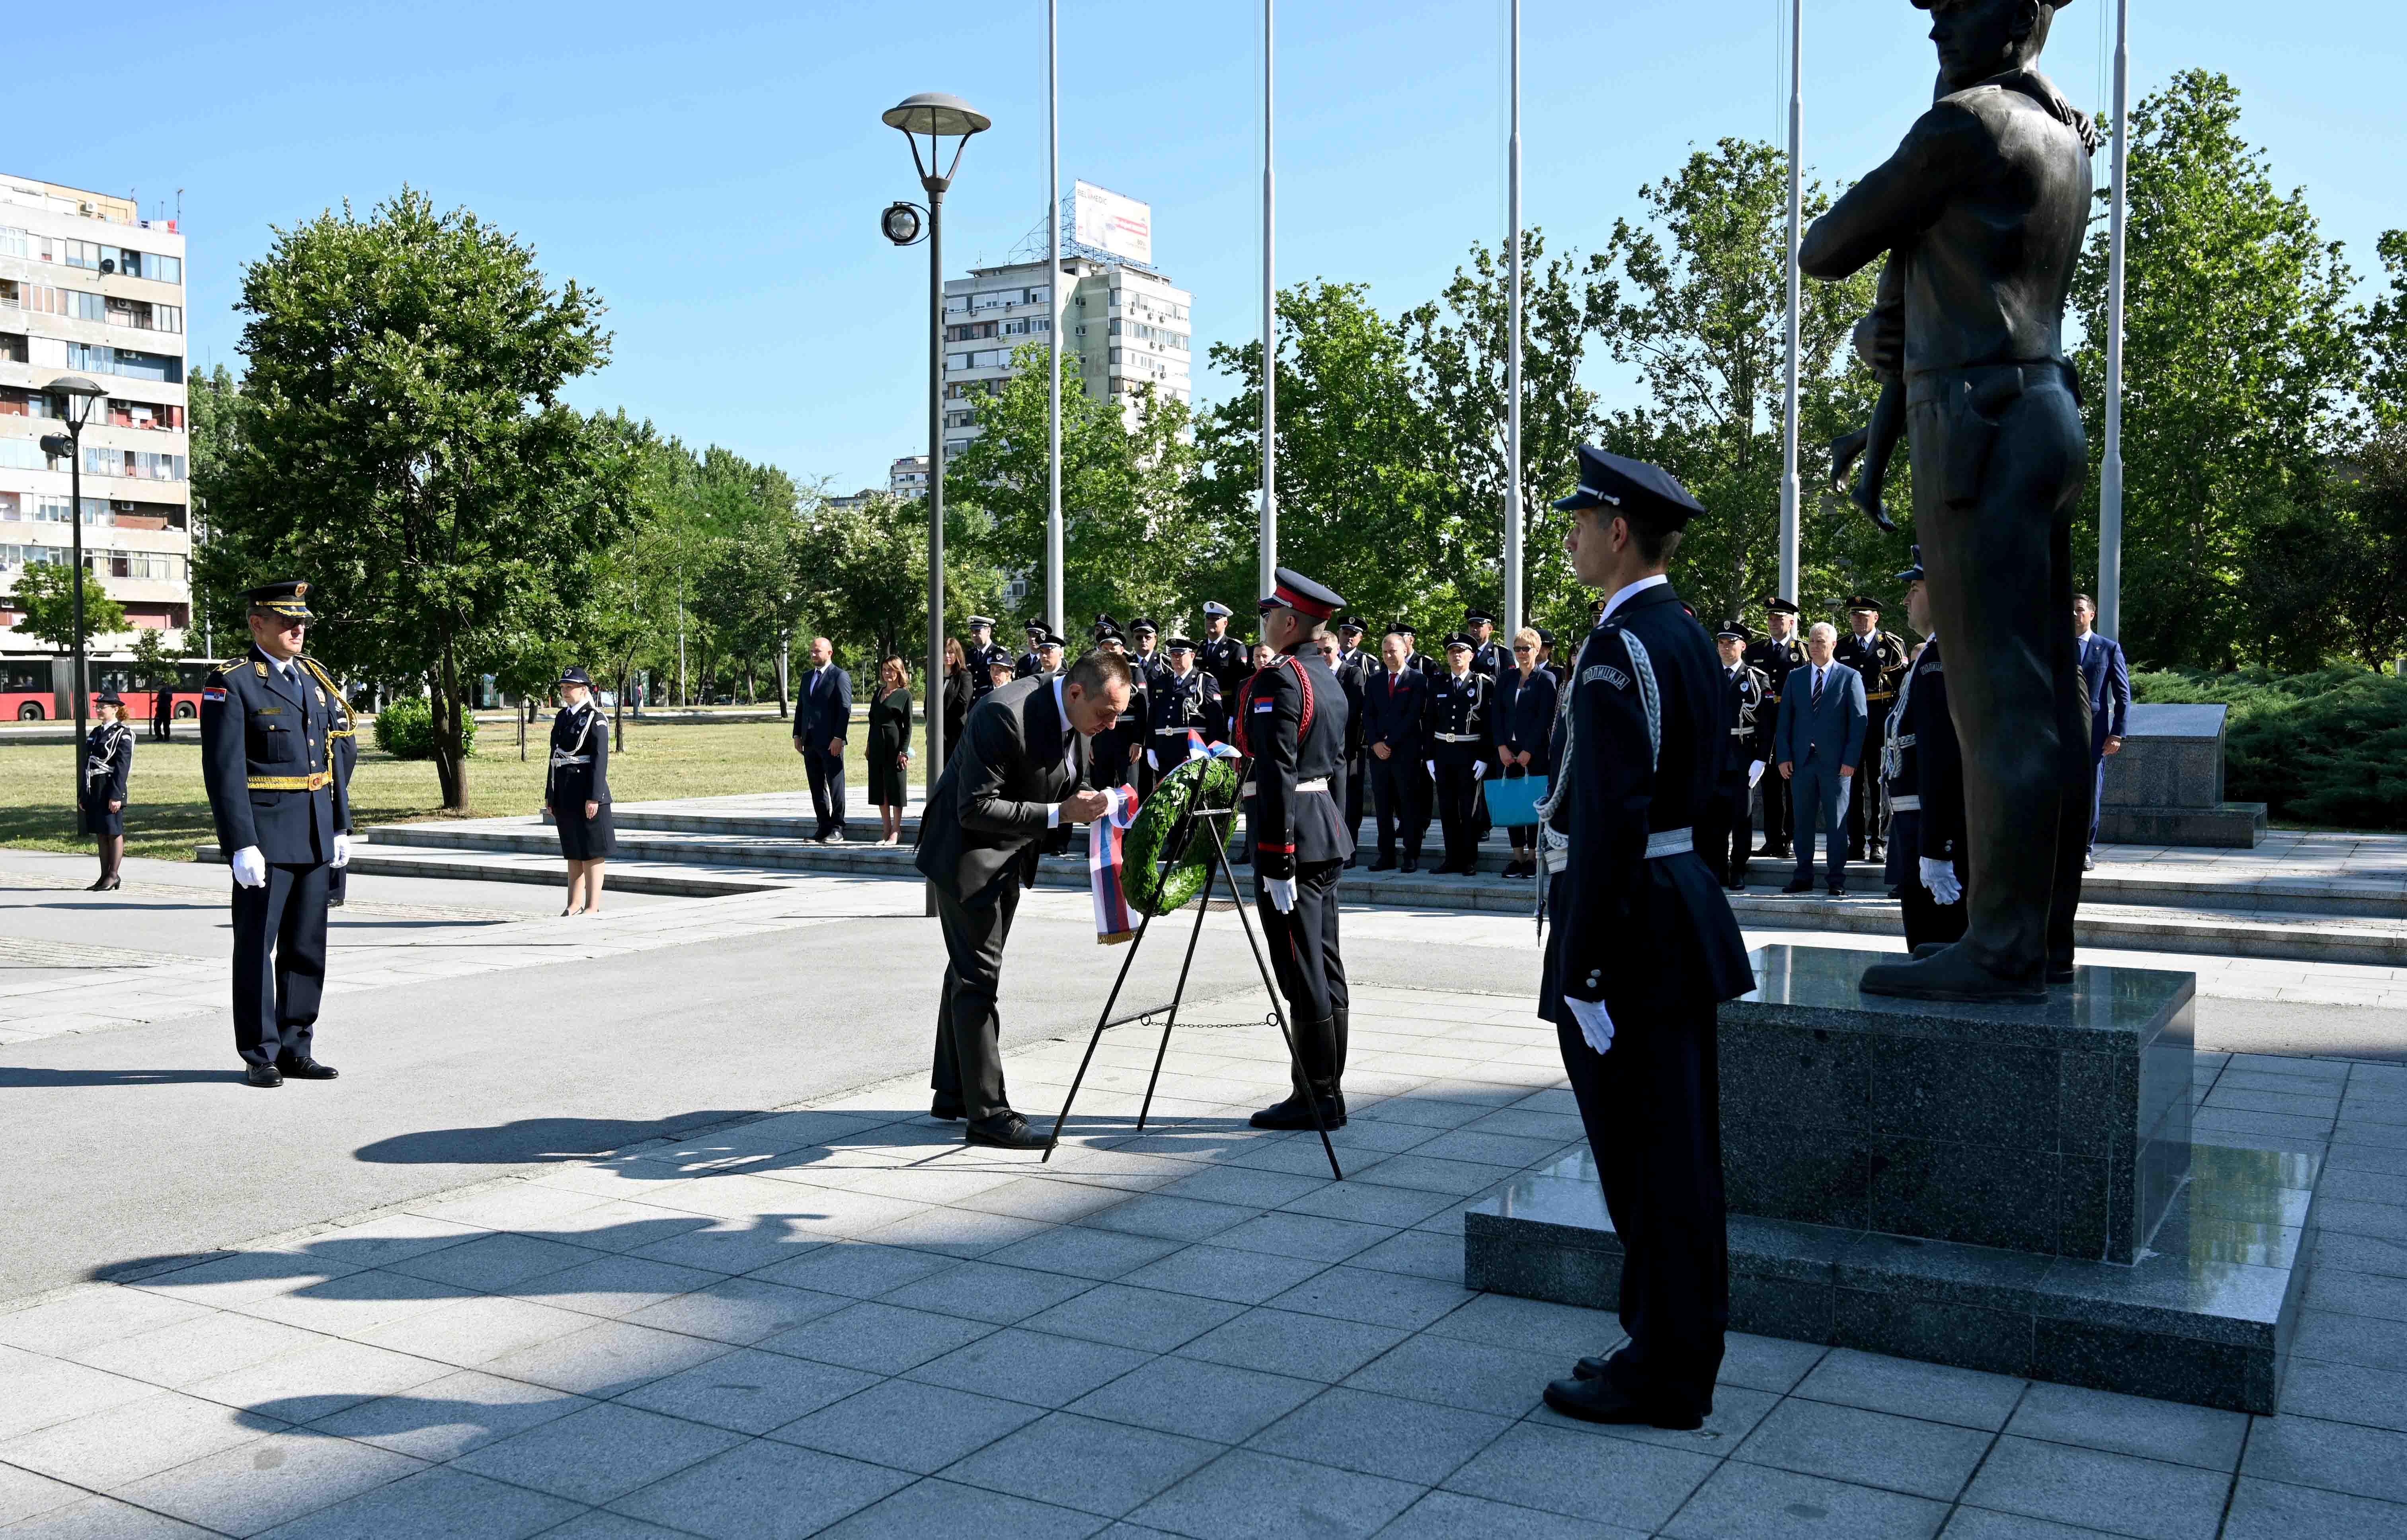 Ministar Vulin položio venac na spomen-obeležje u znak sećanja na stradale  policijske službenike i prisustvovao sečenju slavskog kolača